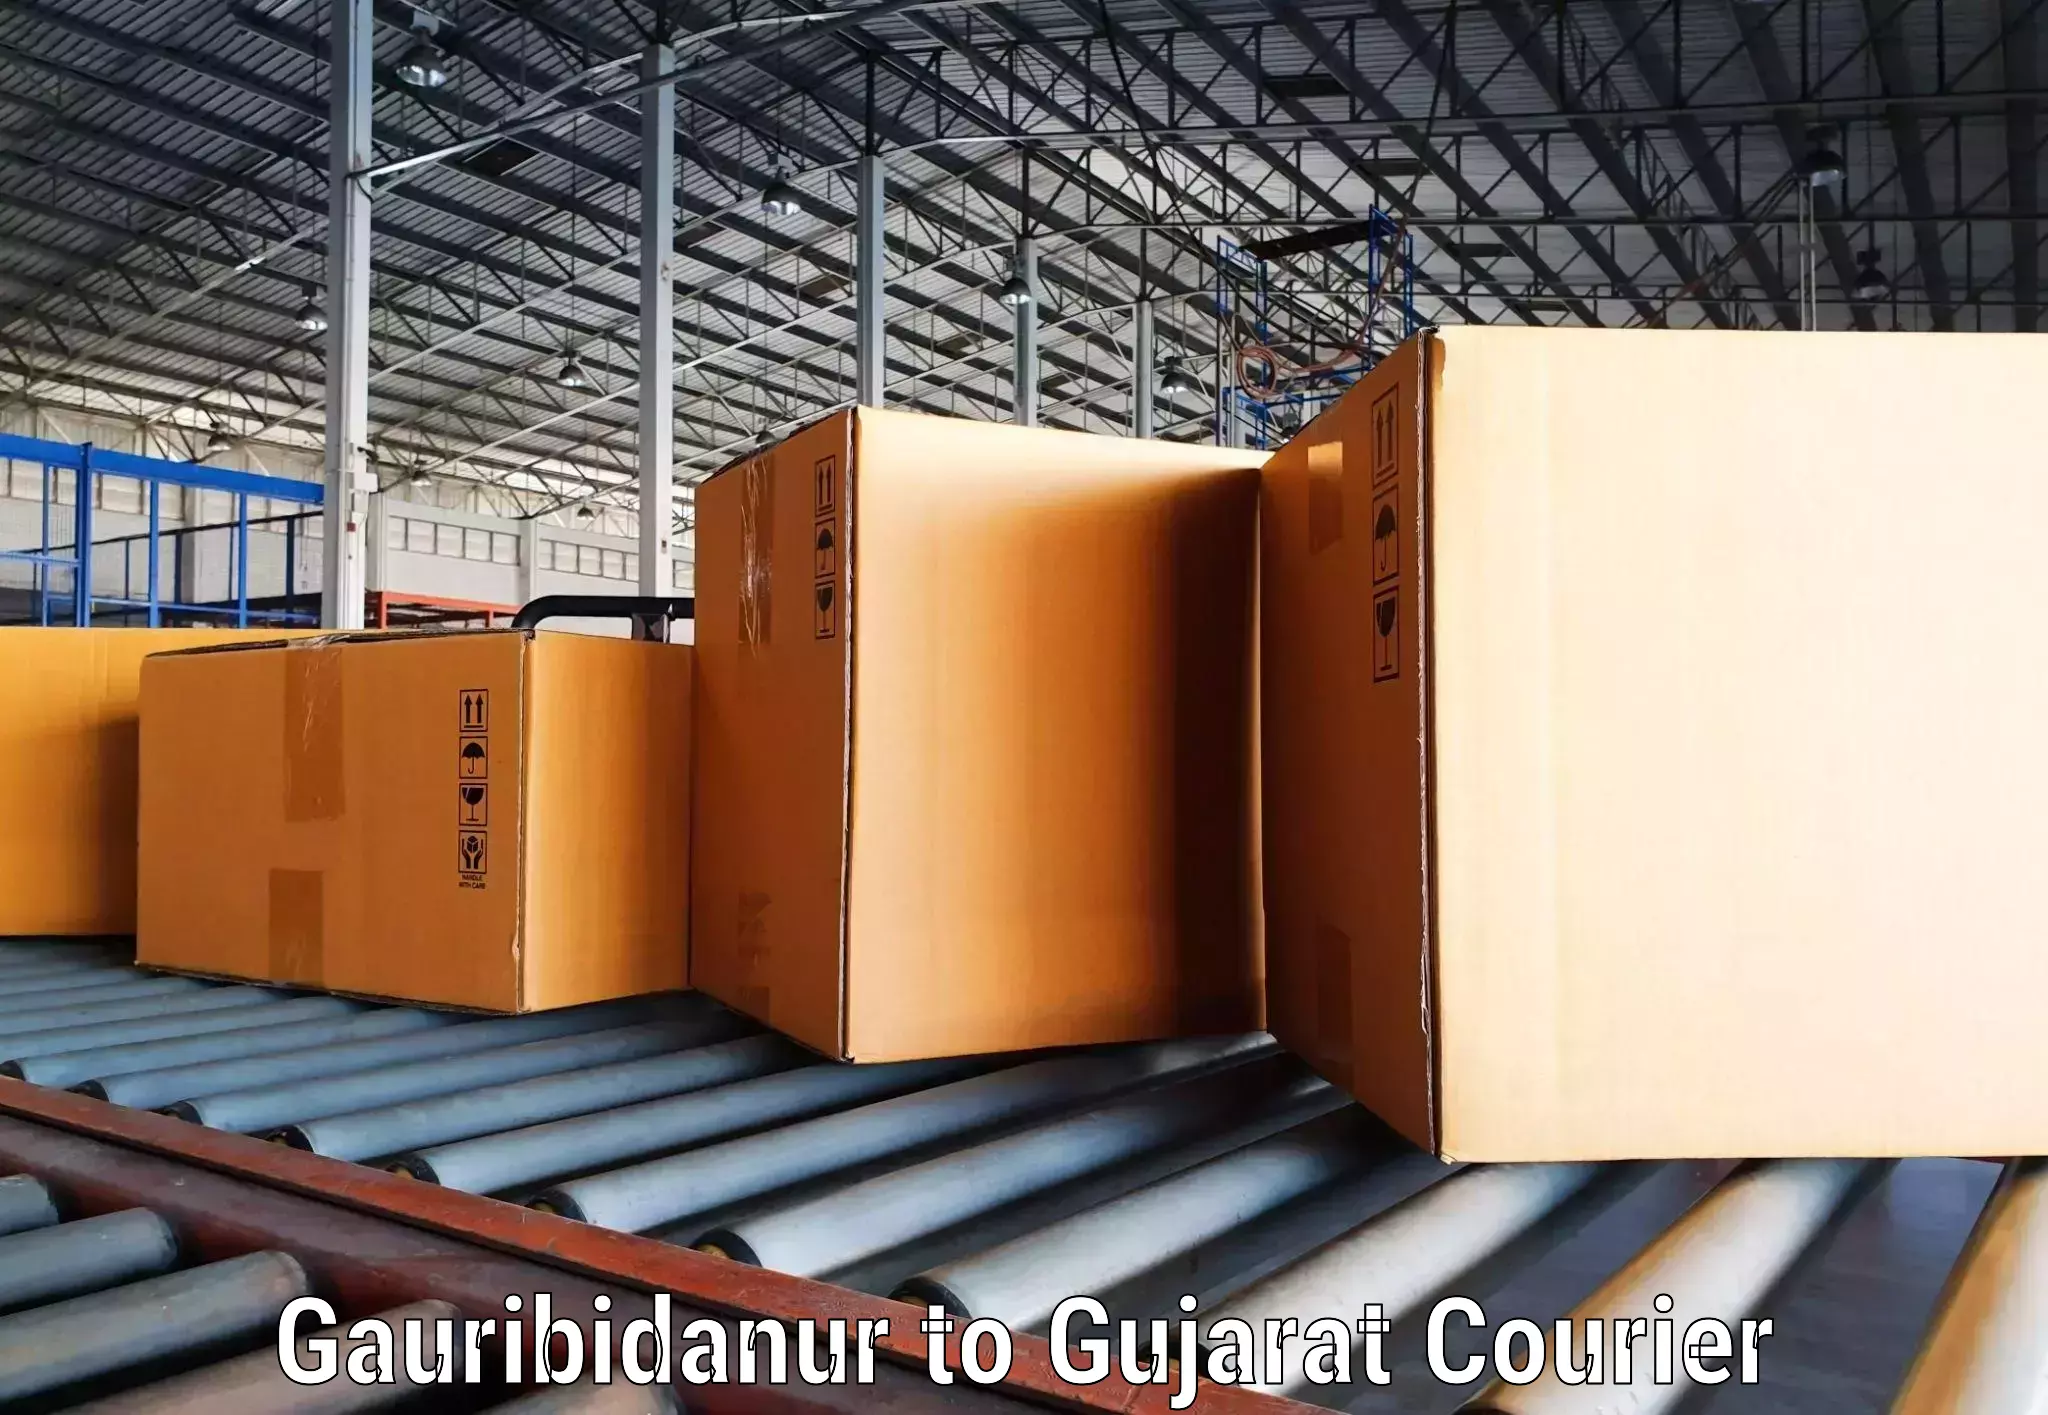 Modern courier technology Gauribidanur to Bhuj